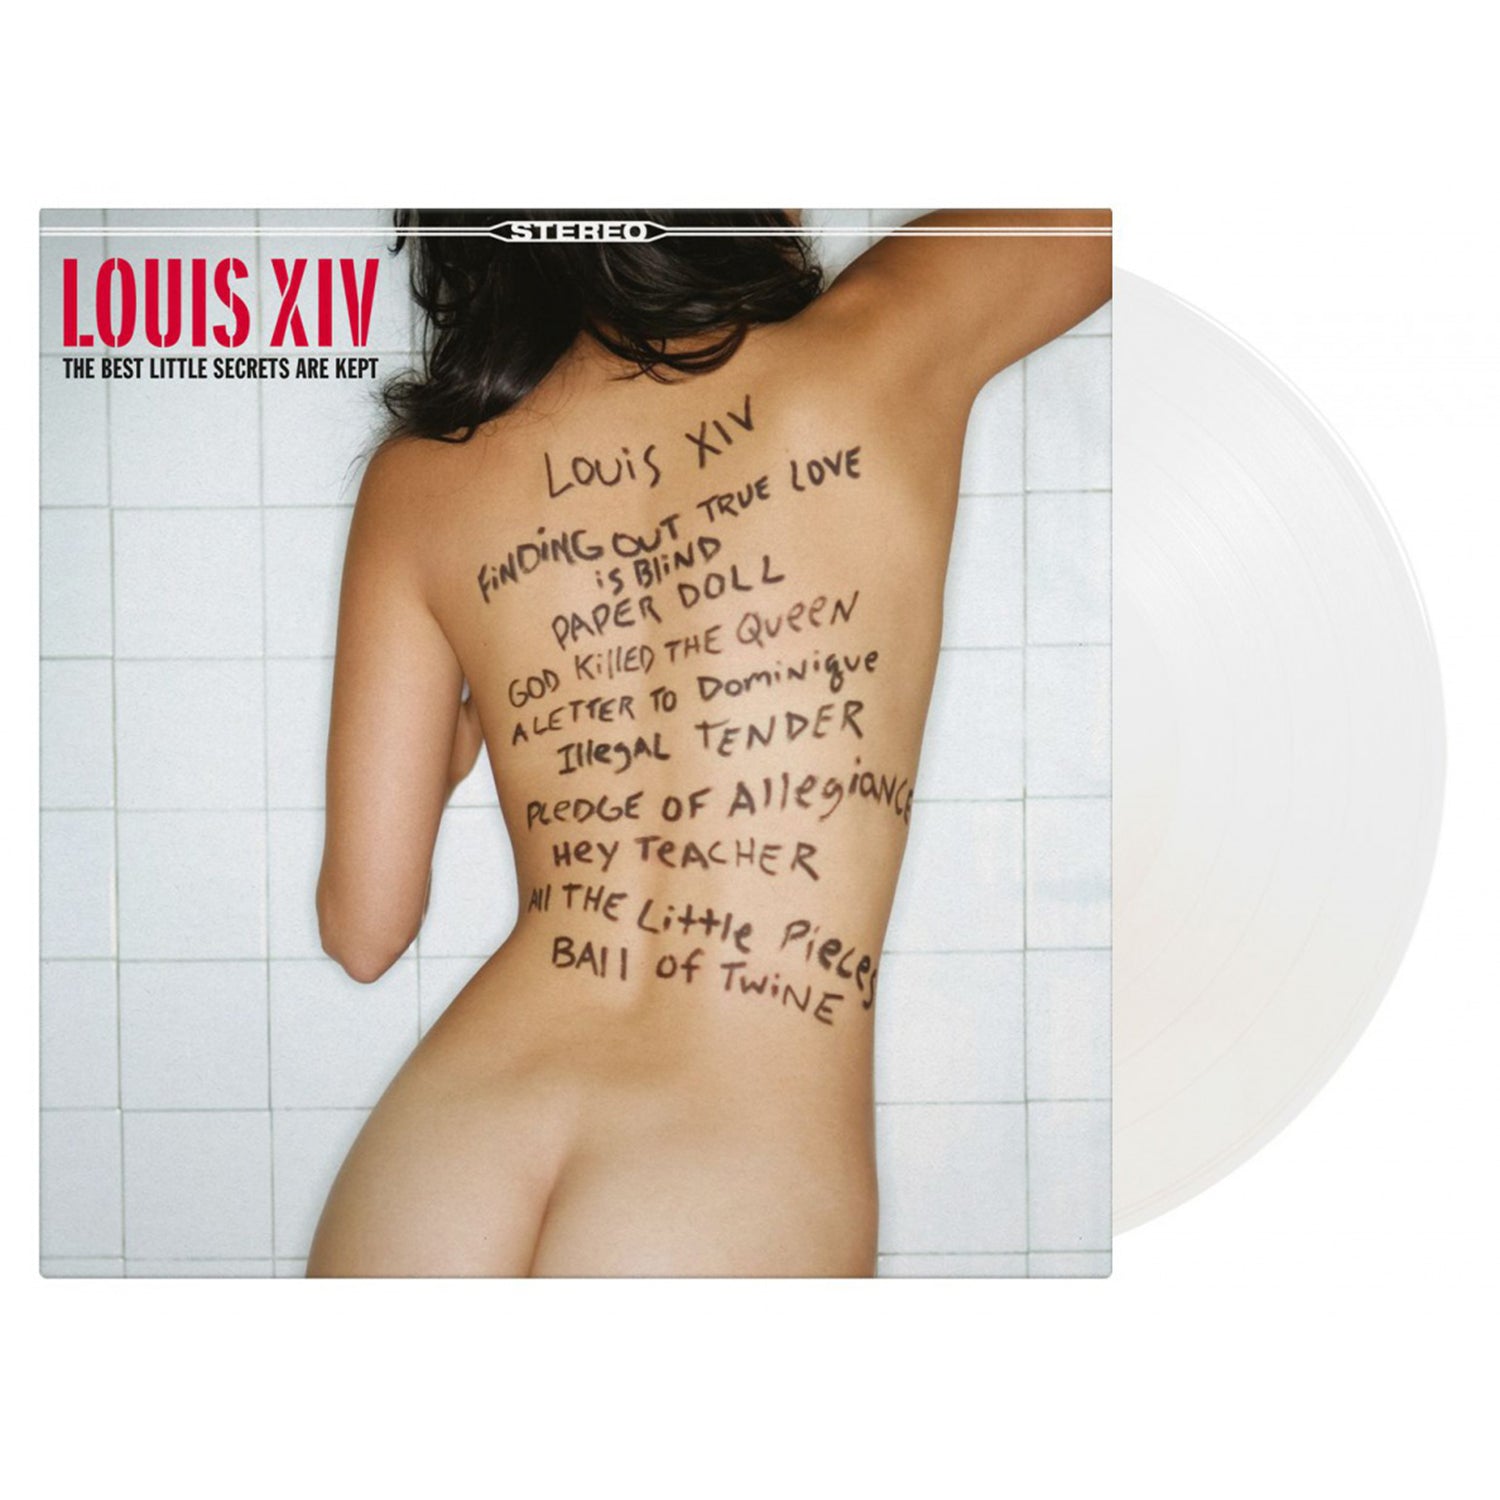 LOUIS XIV - The Best Little Secrets Are Kept - LP - 180g White Vinyl